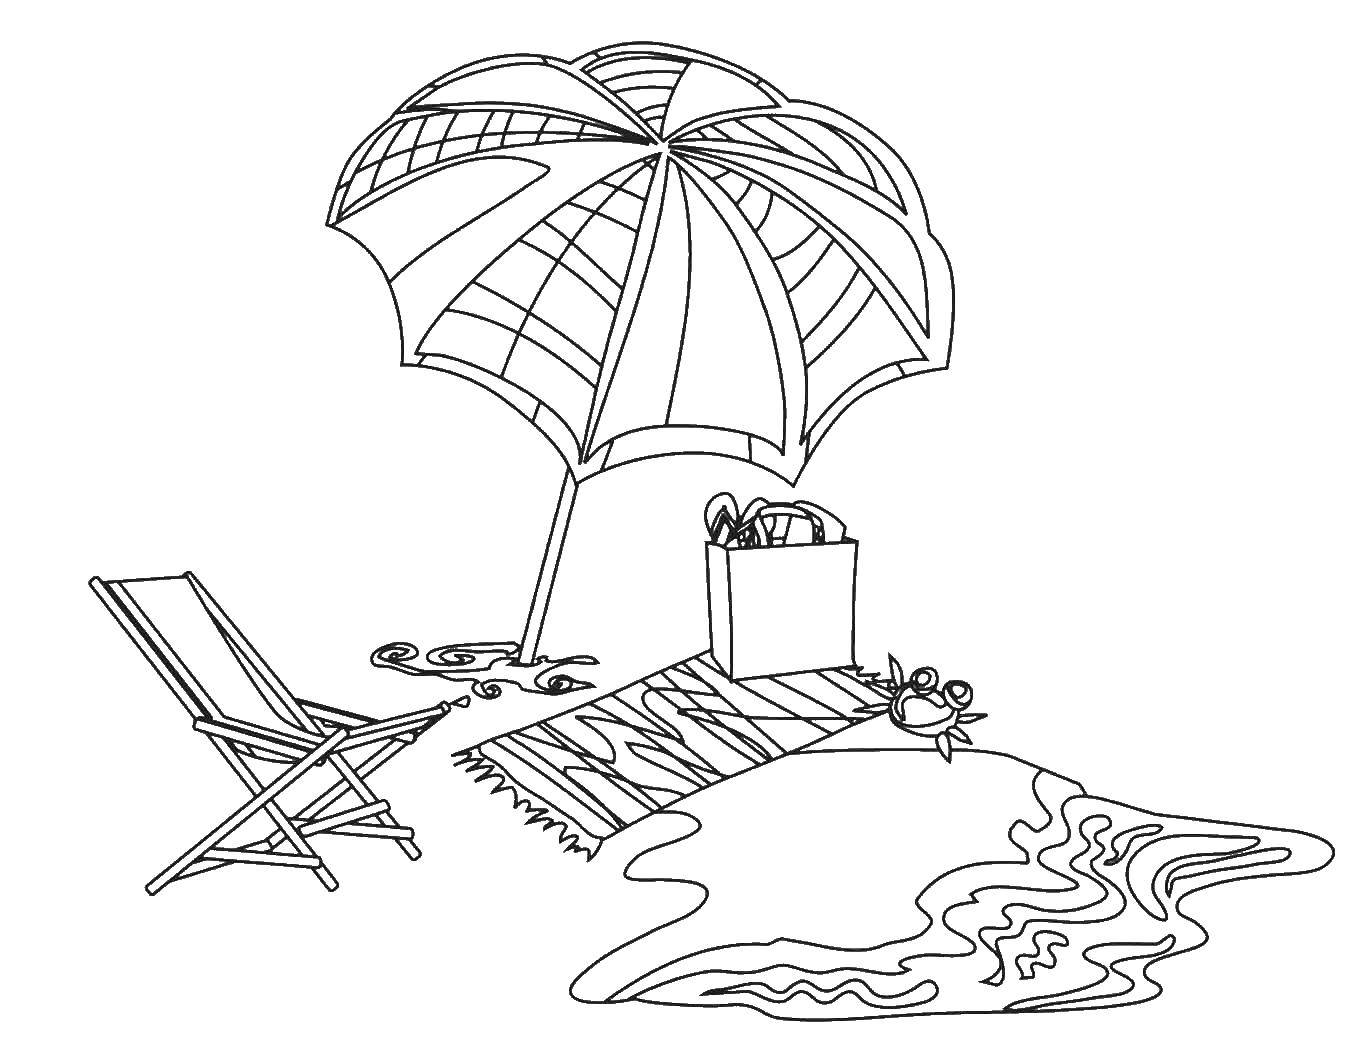  Пляж и море Зонтик, лежак, полотенце, корзина с продуктами и краб на берегу моря.